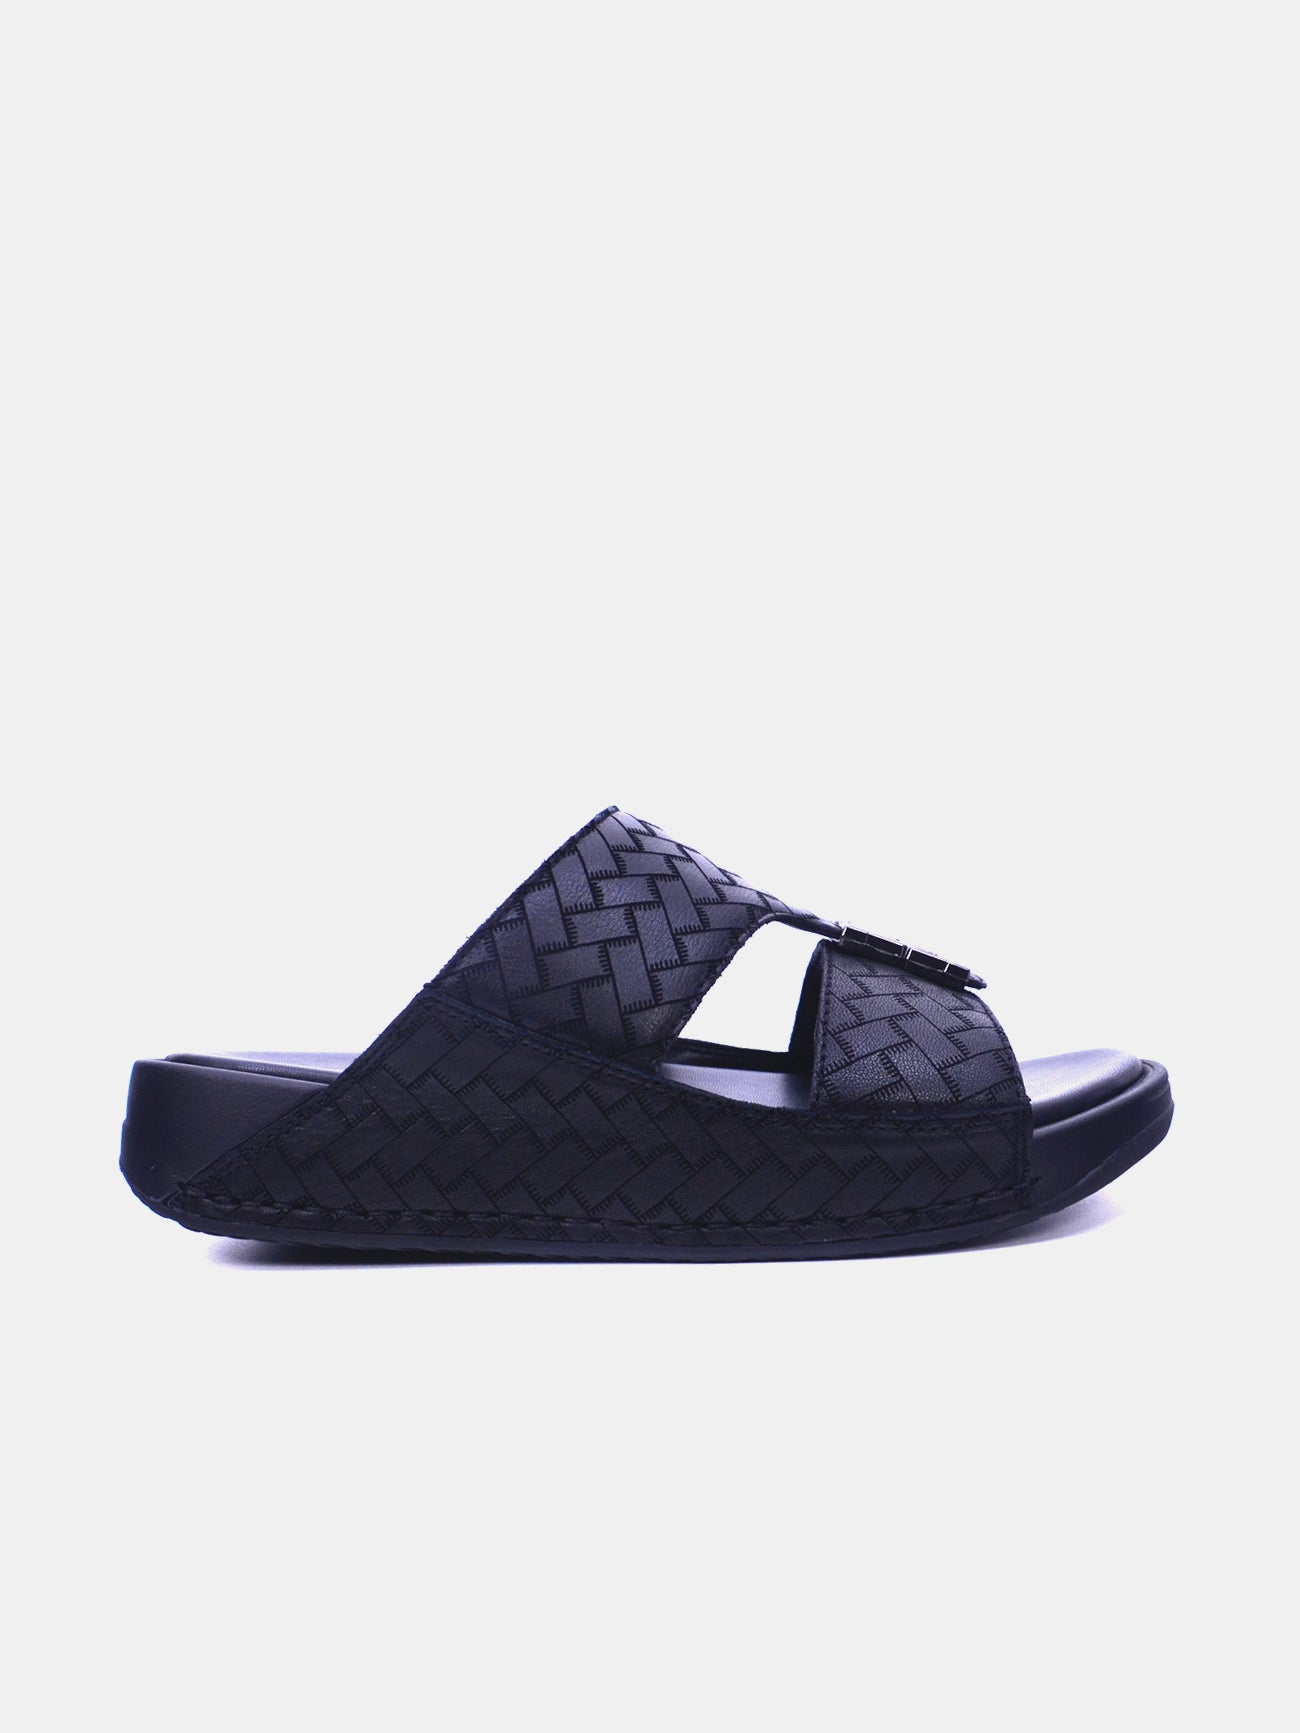 Barjeel Uno 2368-1 Men's Arabic Sandals